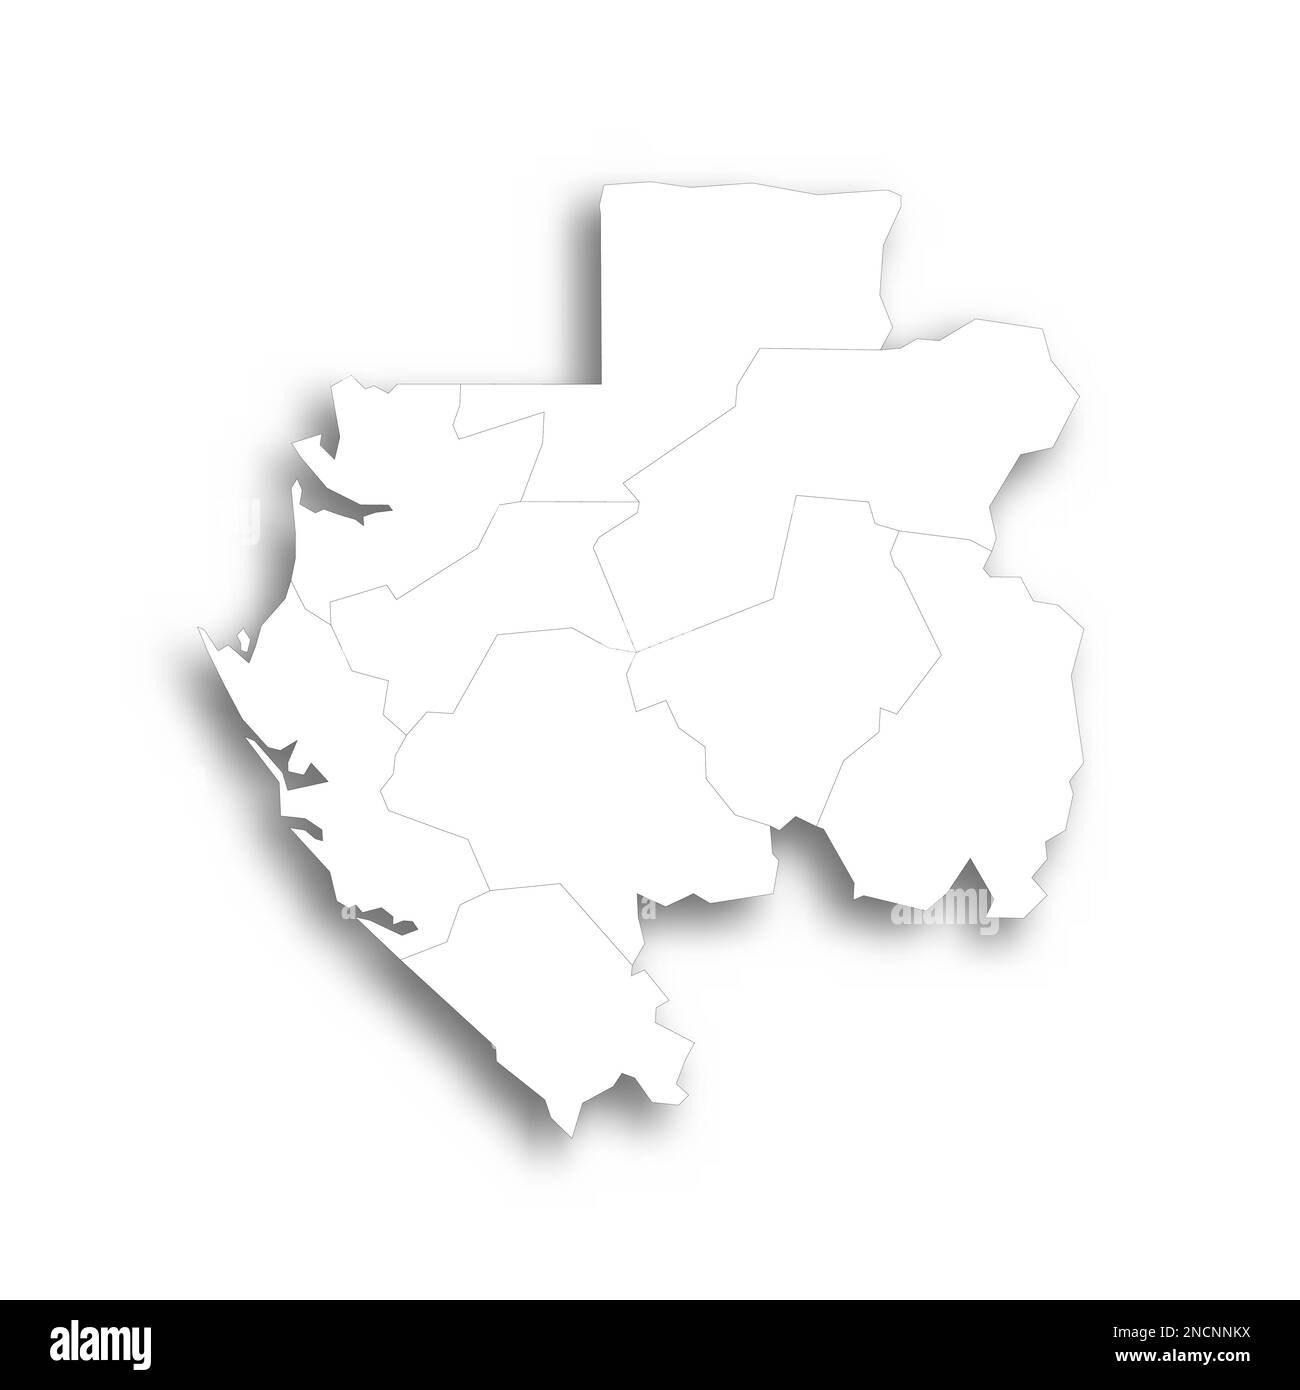 Gabun politische Karte der Verwaltungsabteilungen - Provinzen. Flache weiße, leere Karte mit dünnem schwarzen Umriss und Schlagschatten. Stock Vektor